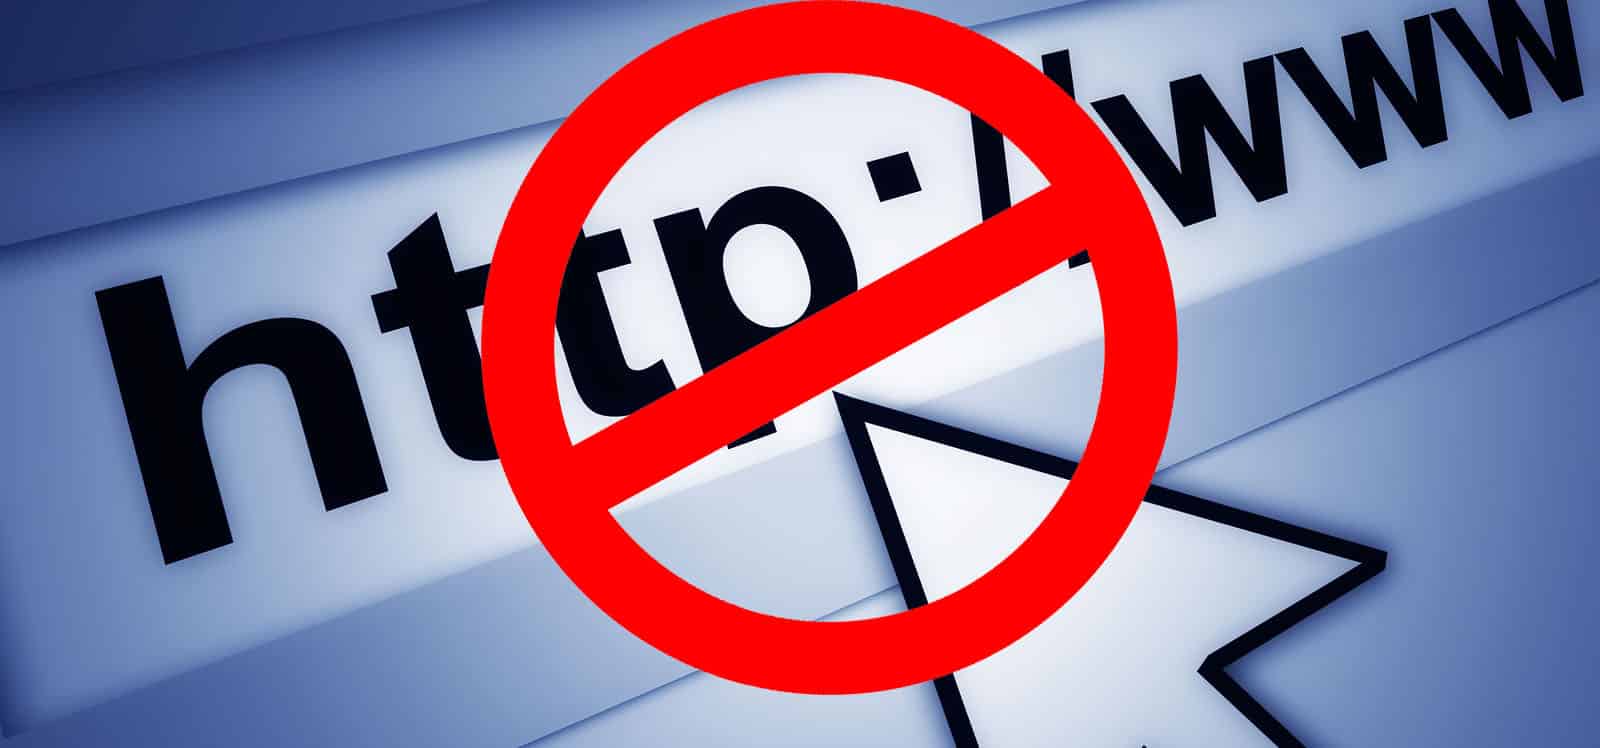 Cara Membuka Website Yang Diblokir Tanpa Aplikasi 2022